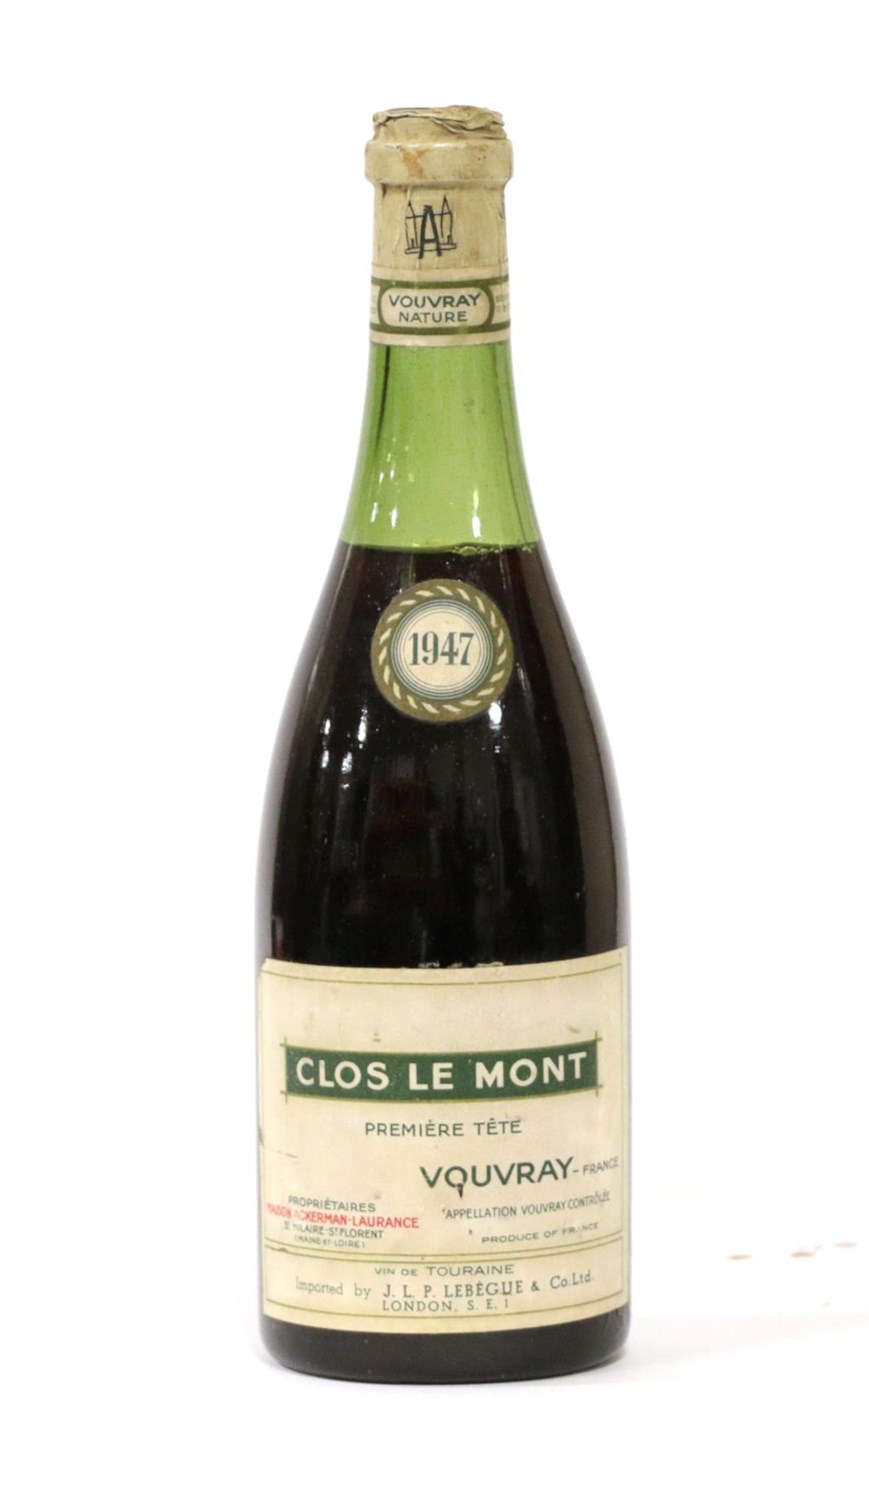 Lot 2090 - Vouvray Clos Le Mont 1947 Maison Ackerman Laurance (one bottle)